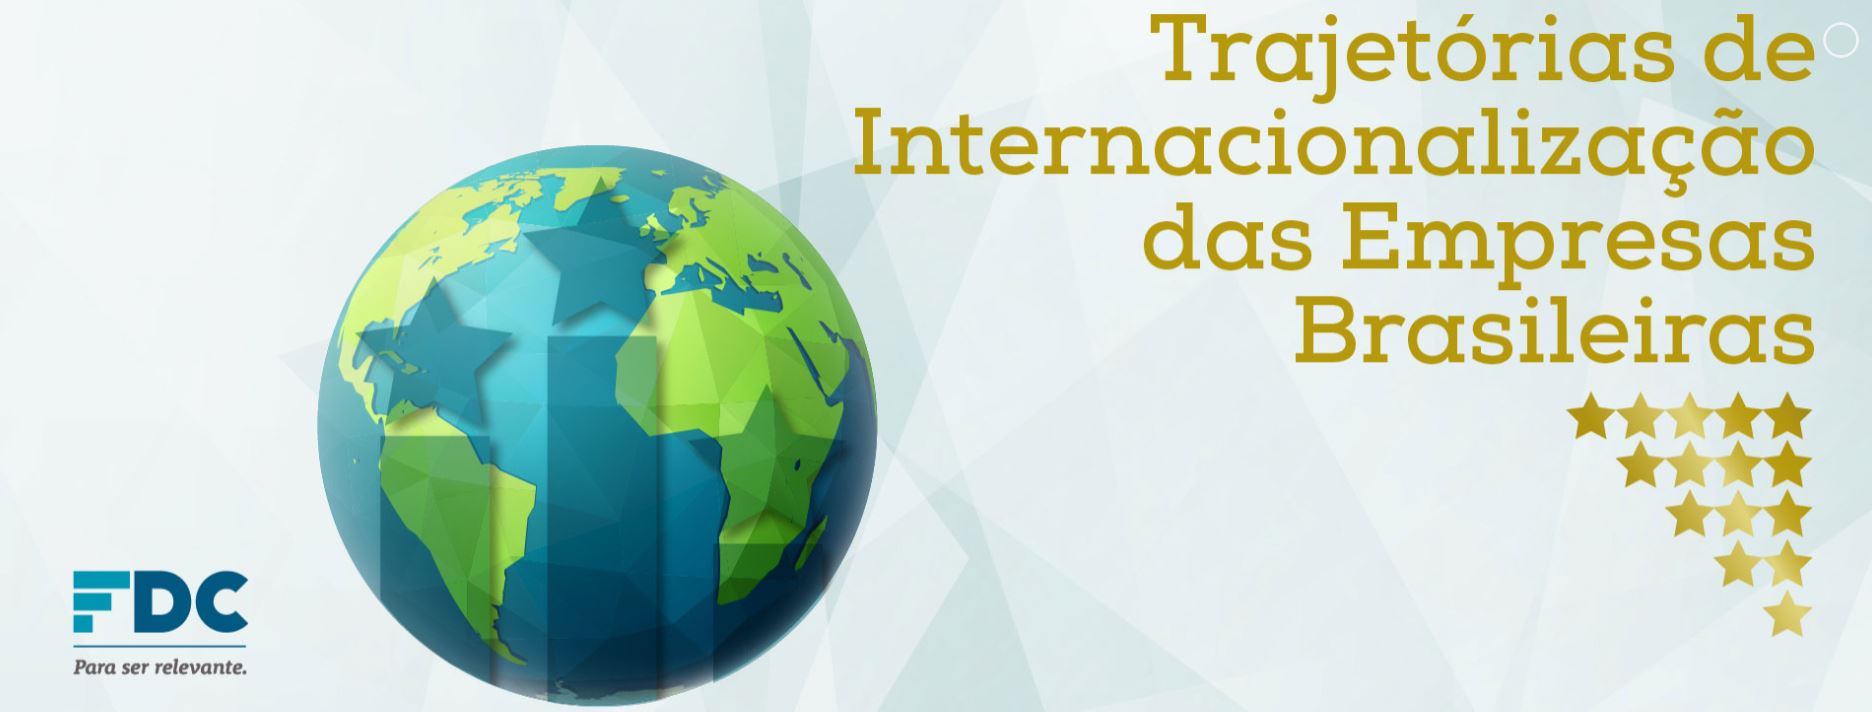 Participe da pesquisa de internacionalização de empresas da Fundação Dom Cabral